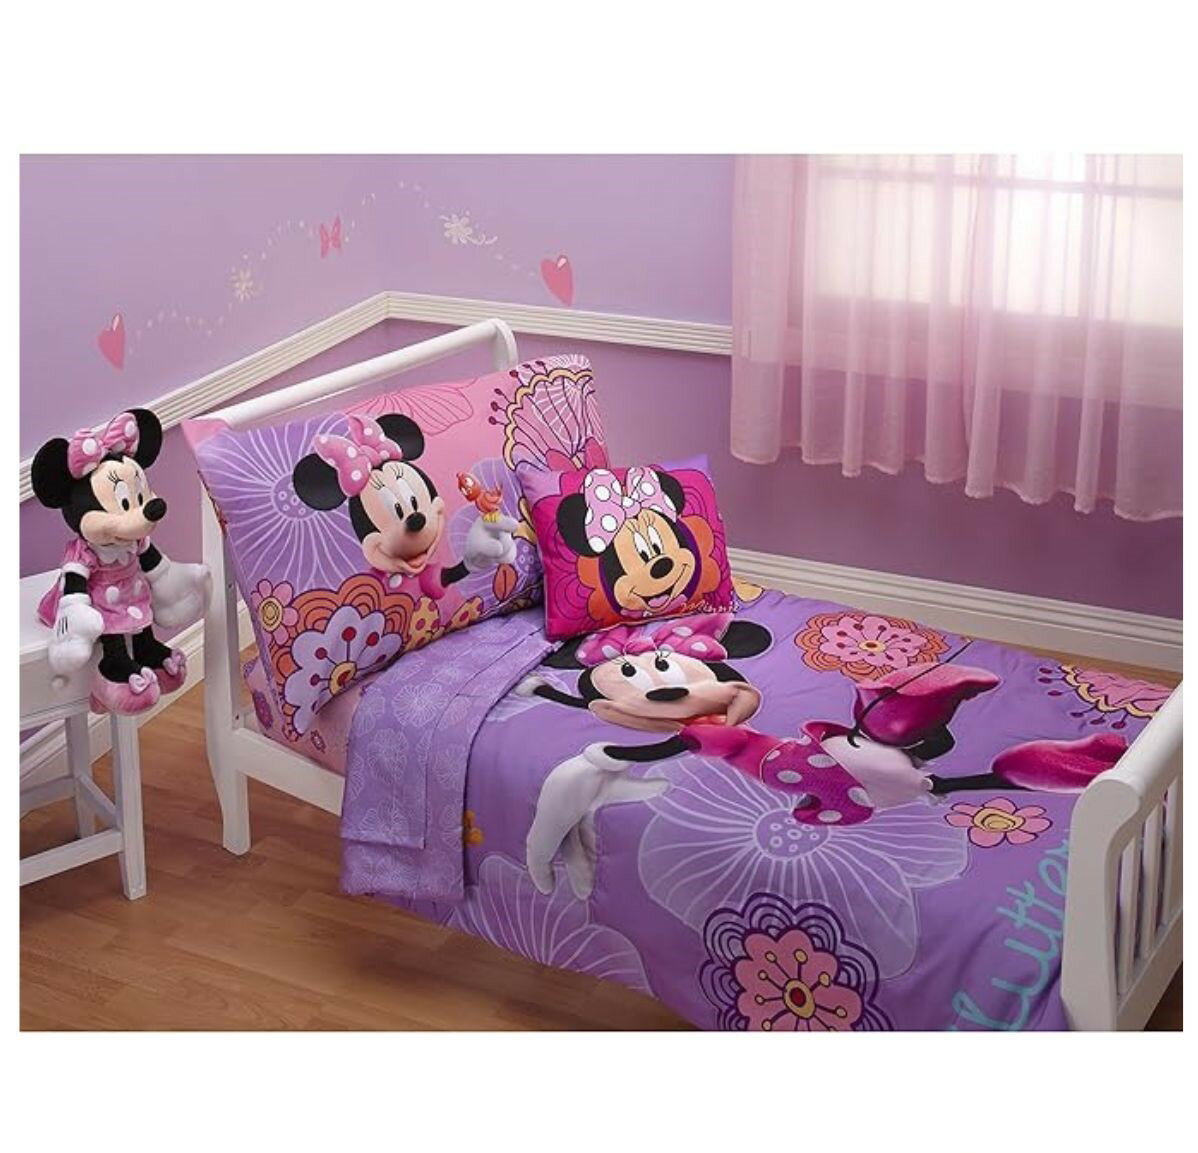 【エクスプレス便】ディズニー ミニーマウス 寝具 ベット 幼児用ベット 枕カバー・シーツ・コンフォーター4点セット ラベンダー　Disney 4 Piece Minnie's Fluttery Friends Toddler Bedding Set, Lavender